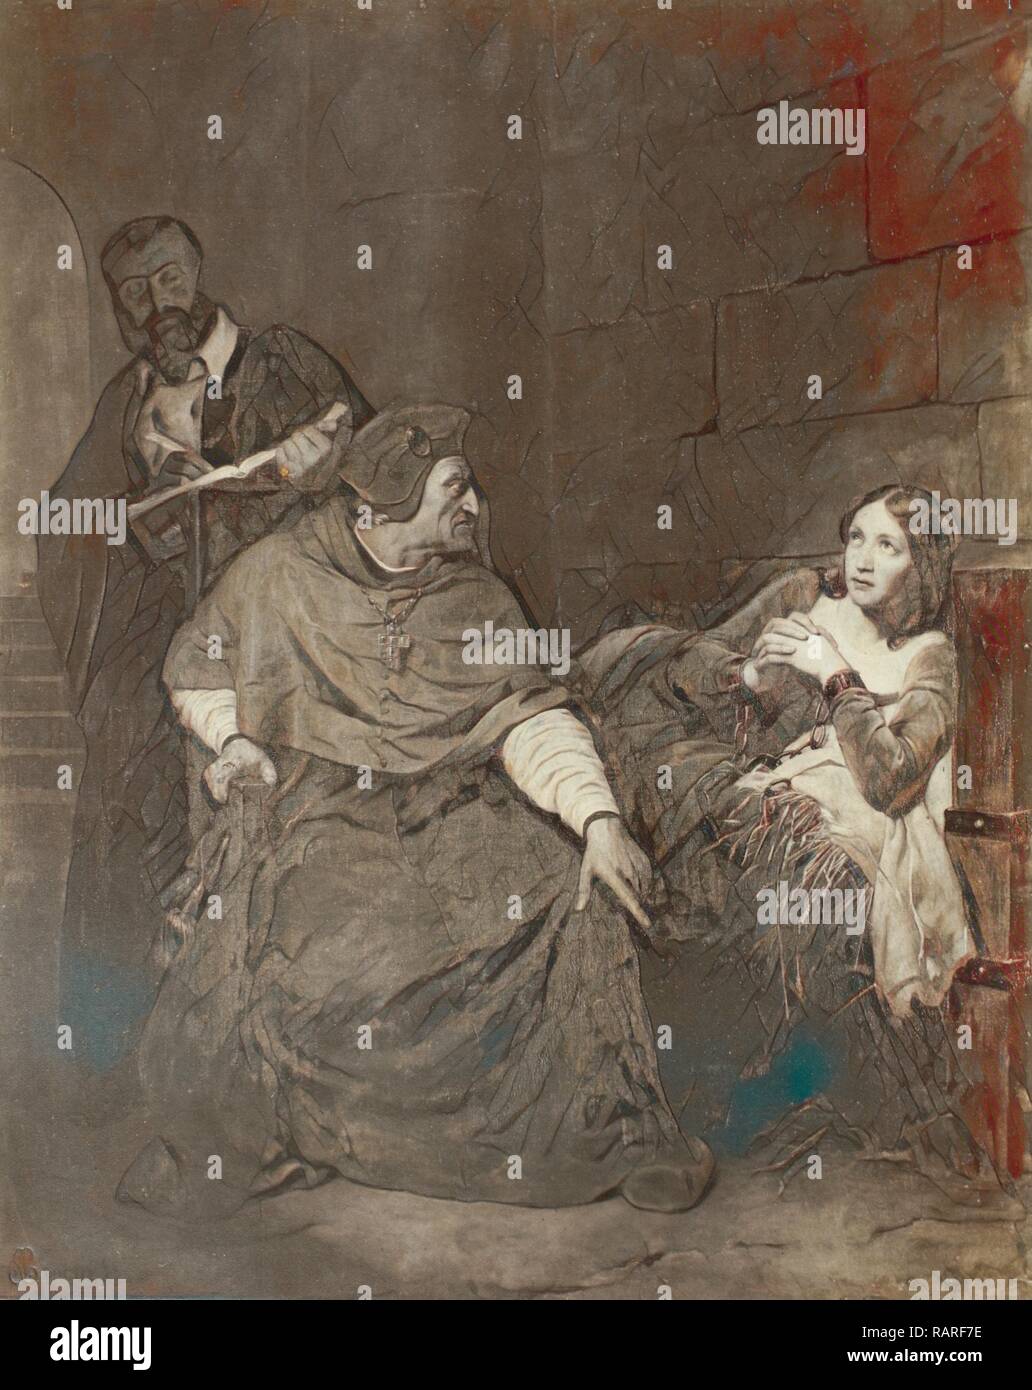 Peinture de Paul Delaroche : Jeanne d'Arc, Jeanne d'Arc est malade interrogee dans sa prison, Robert Jefferson Bingham repensé Banque D'Images